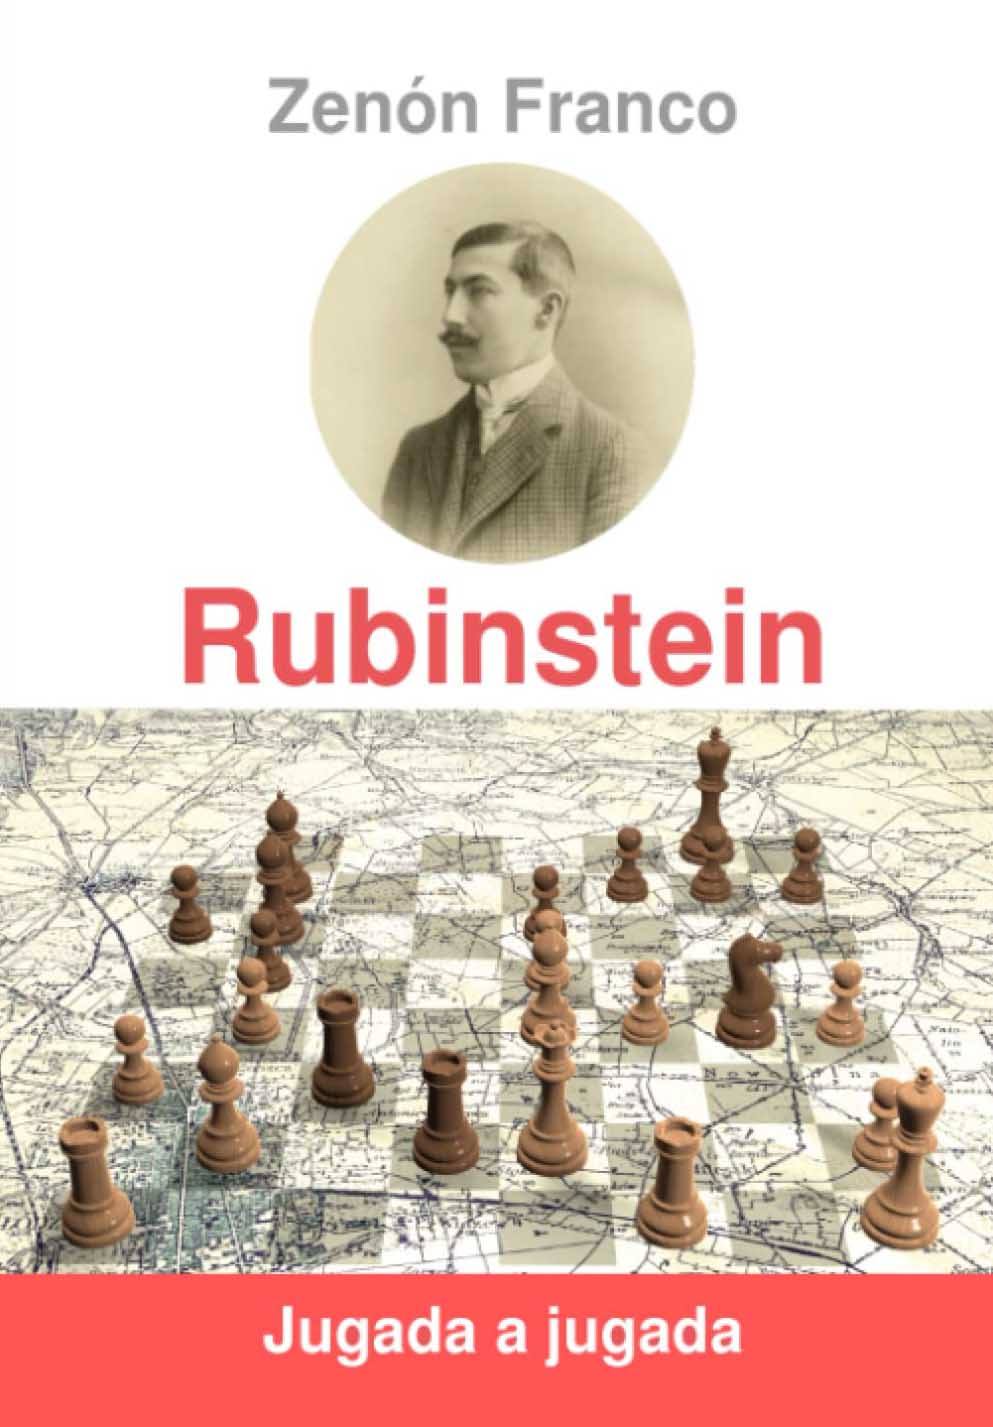 Rubinstein jugada a jugada. 9788409435456